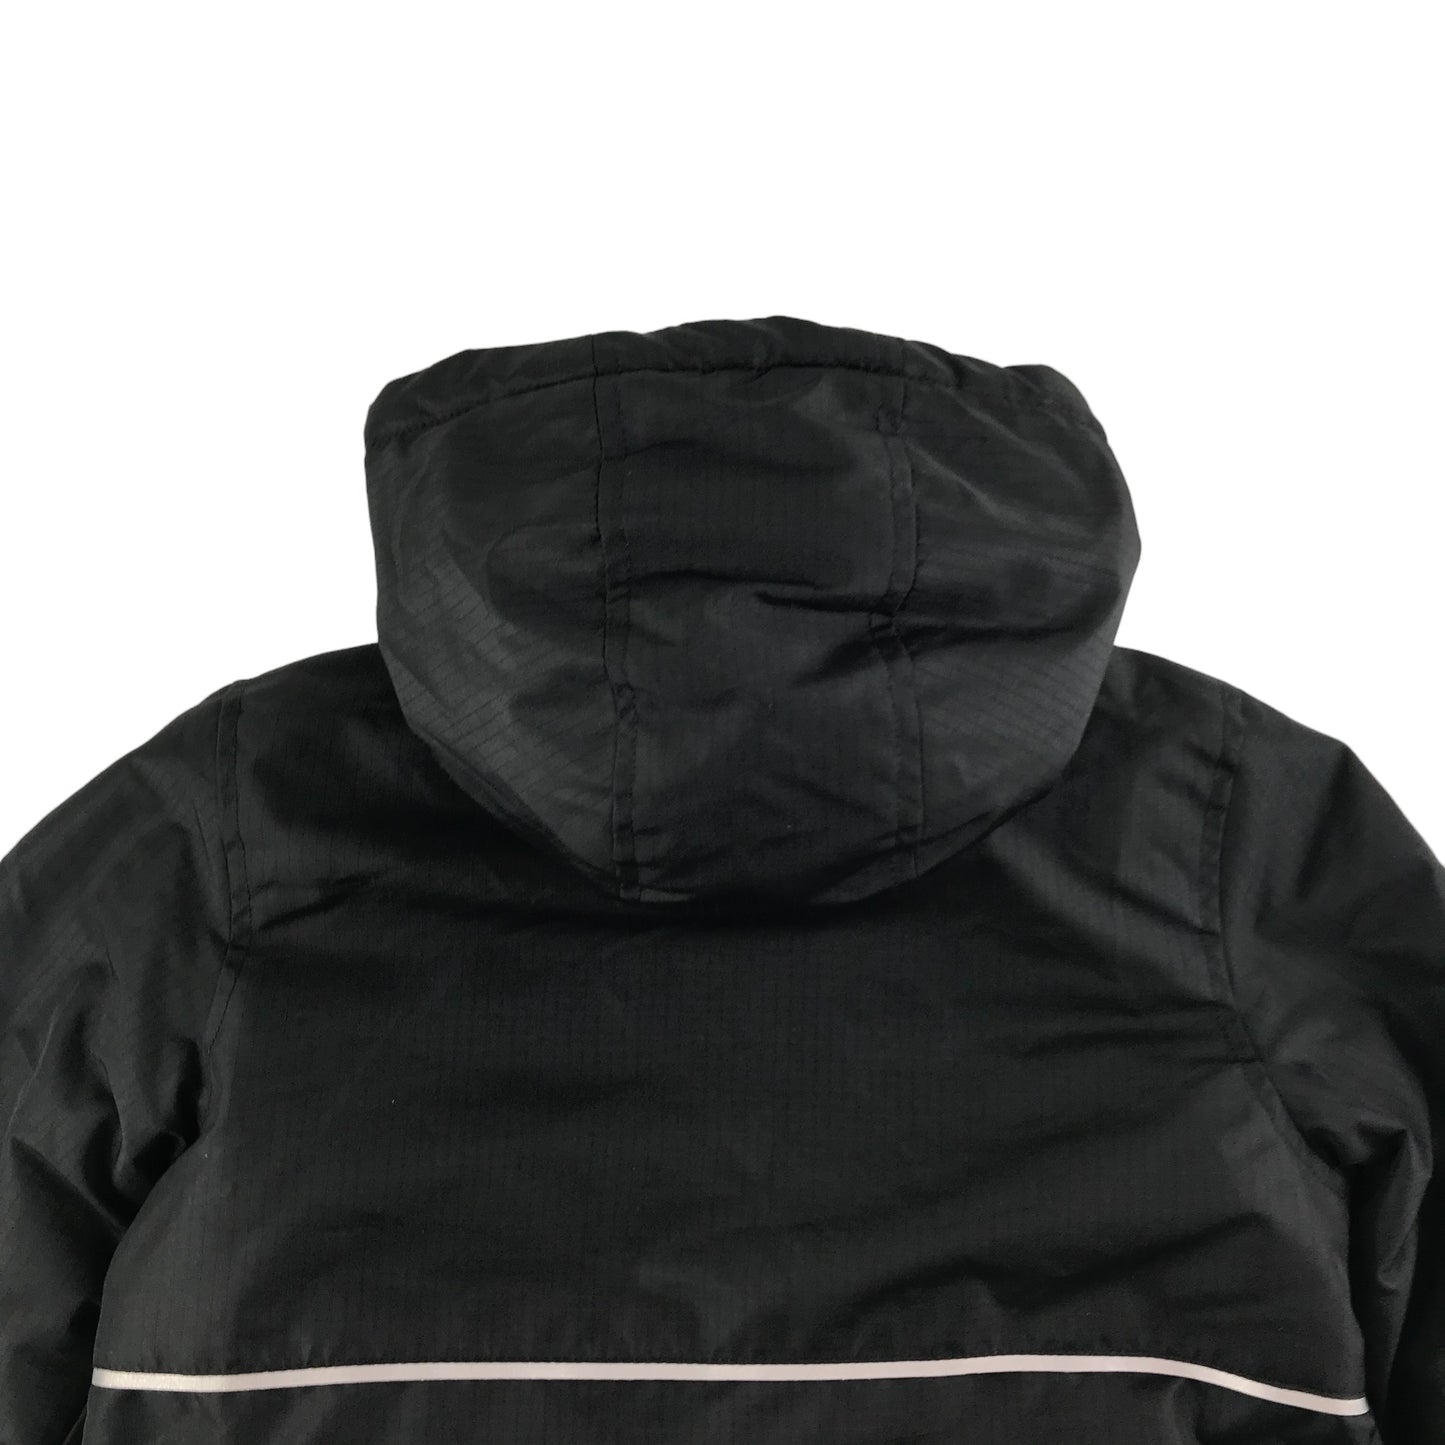 Primark Jacket Age 6 Black Warm Fleece Layered with Hood